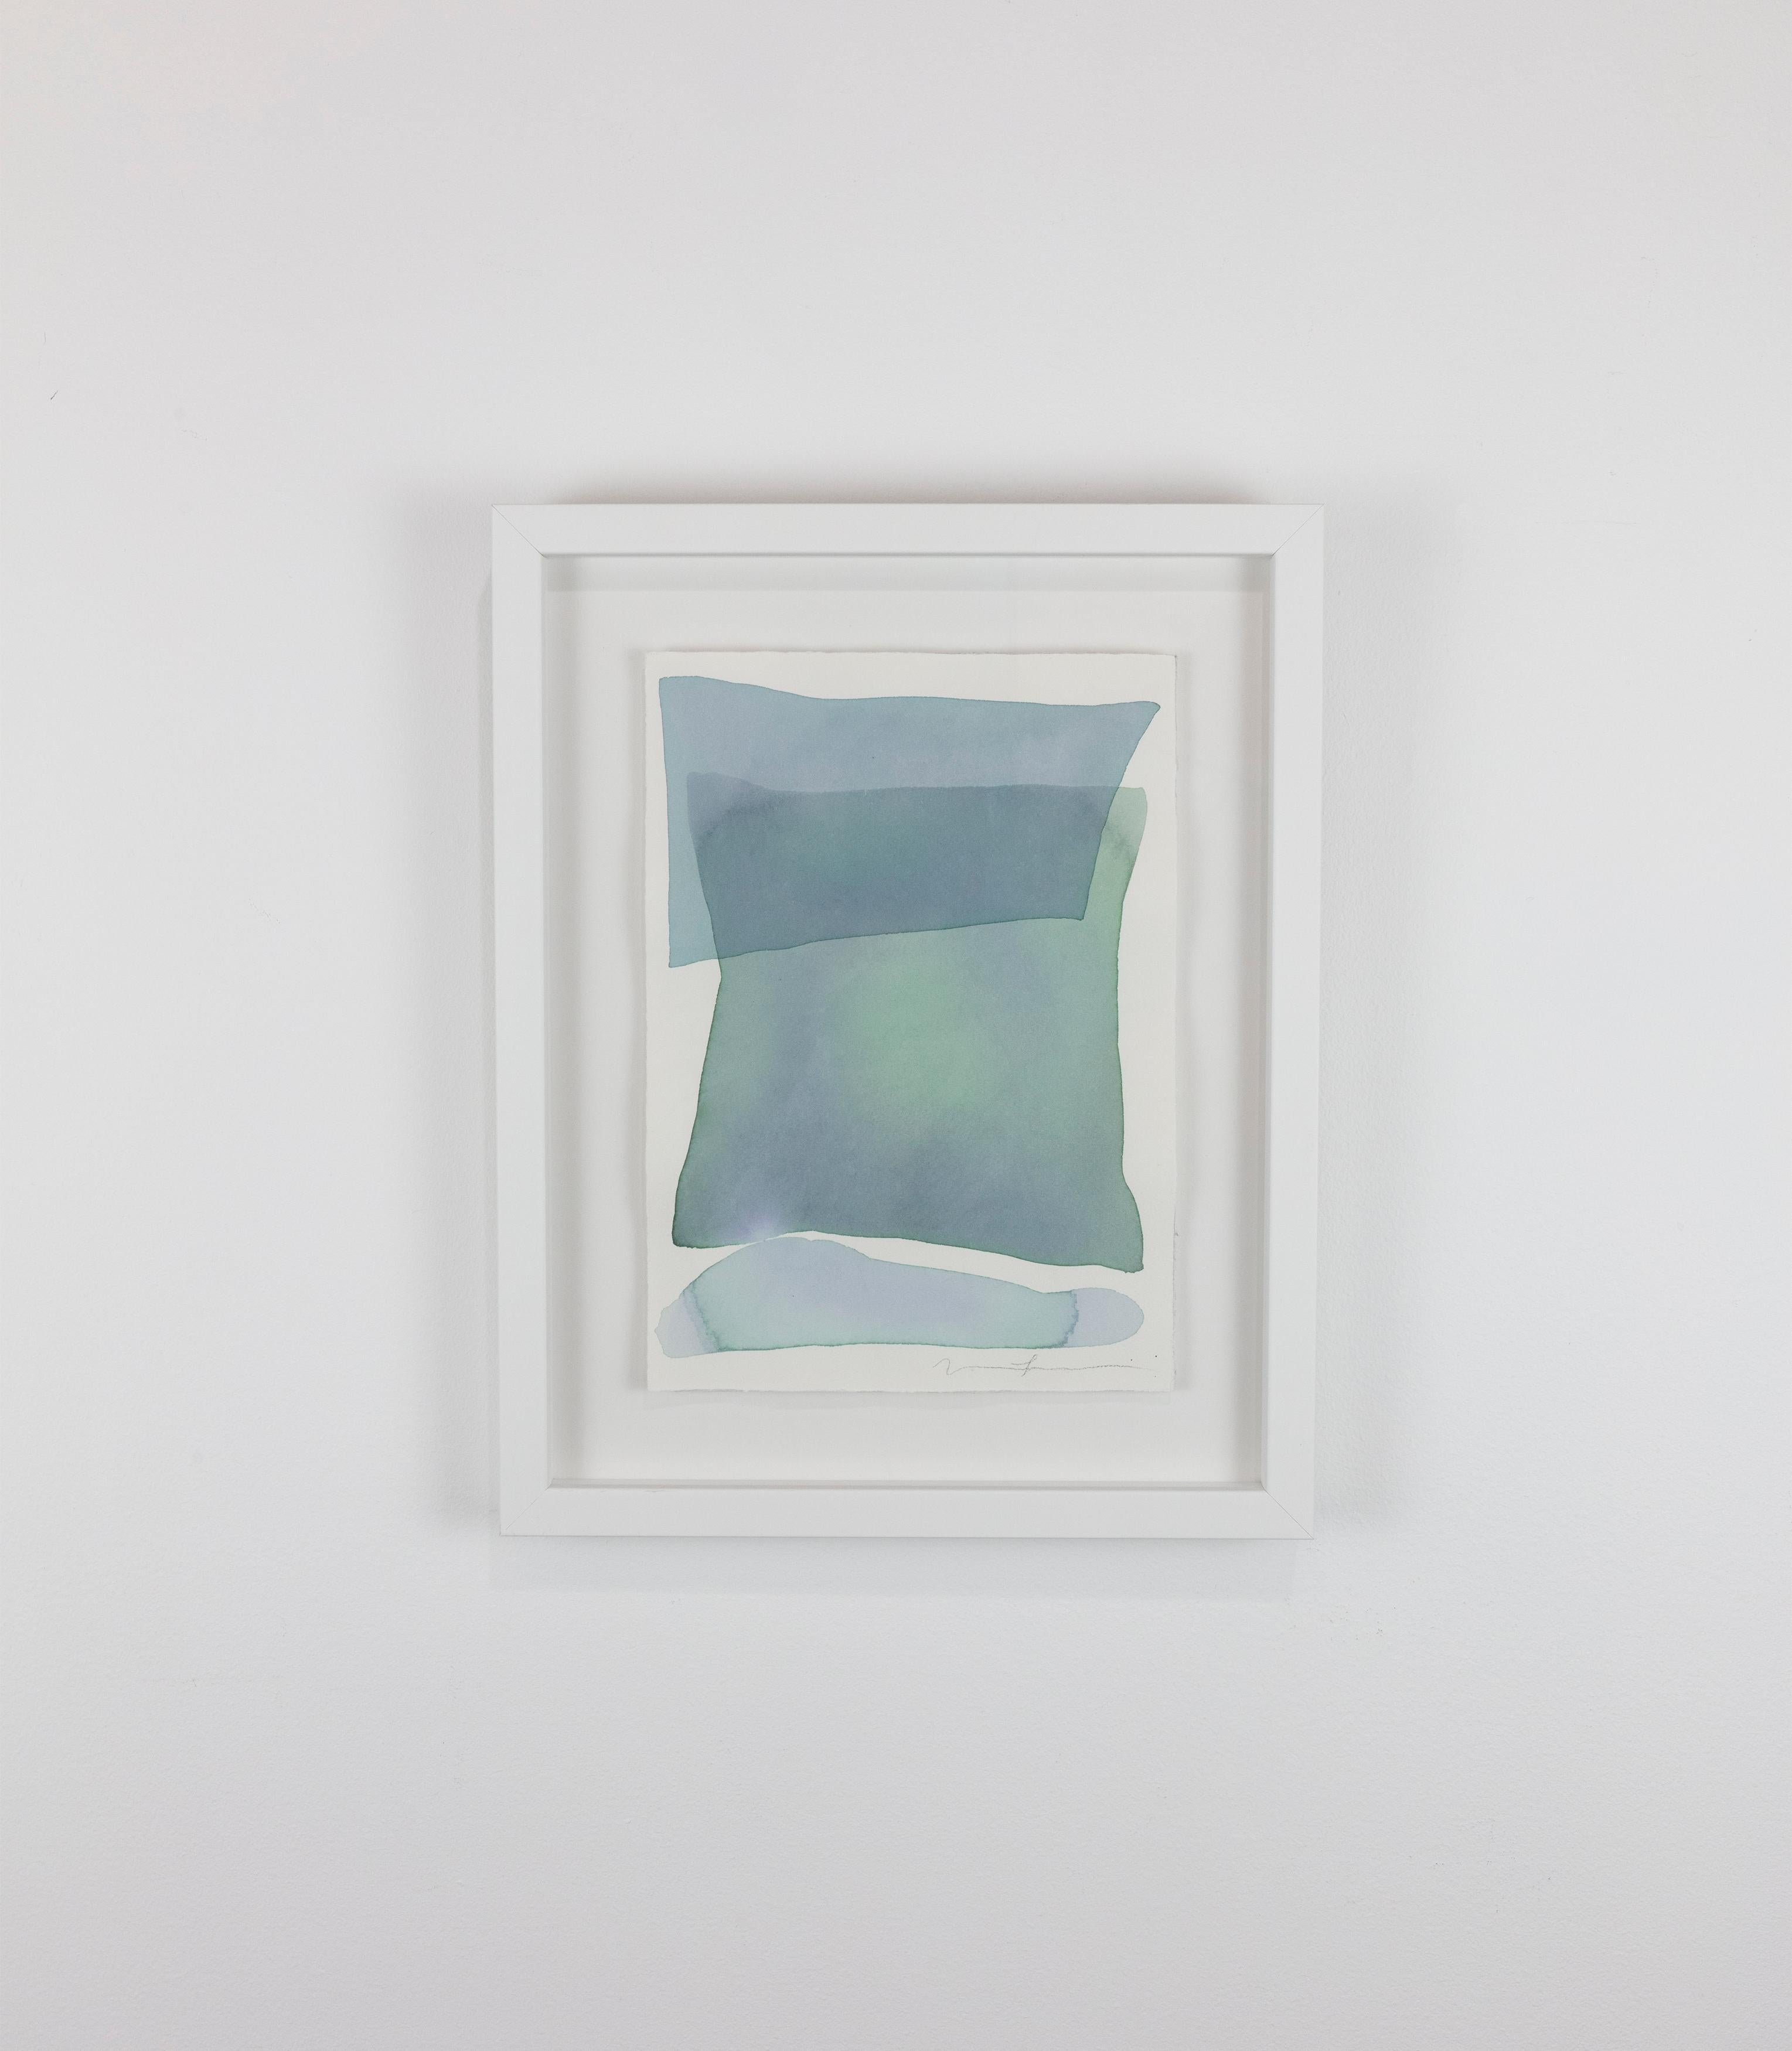 Dieses abstrakte Original-Aquarell von Nealy Hauschildt zeigt eine hellblaue und grüne Palette mit organischen, verwaschenen Farbflächen, die in Schichten aufgetragen werden, um eine abstrakte, organische und ausgewogene Komposition zu schaffen. Das